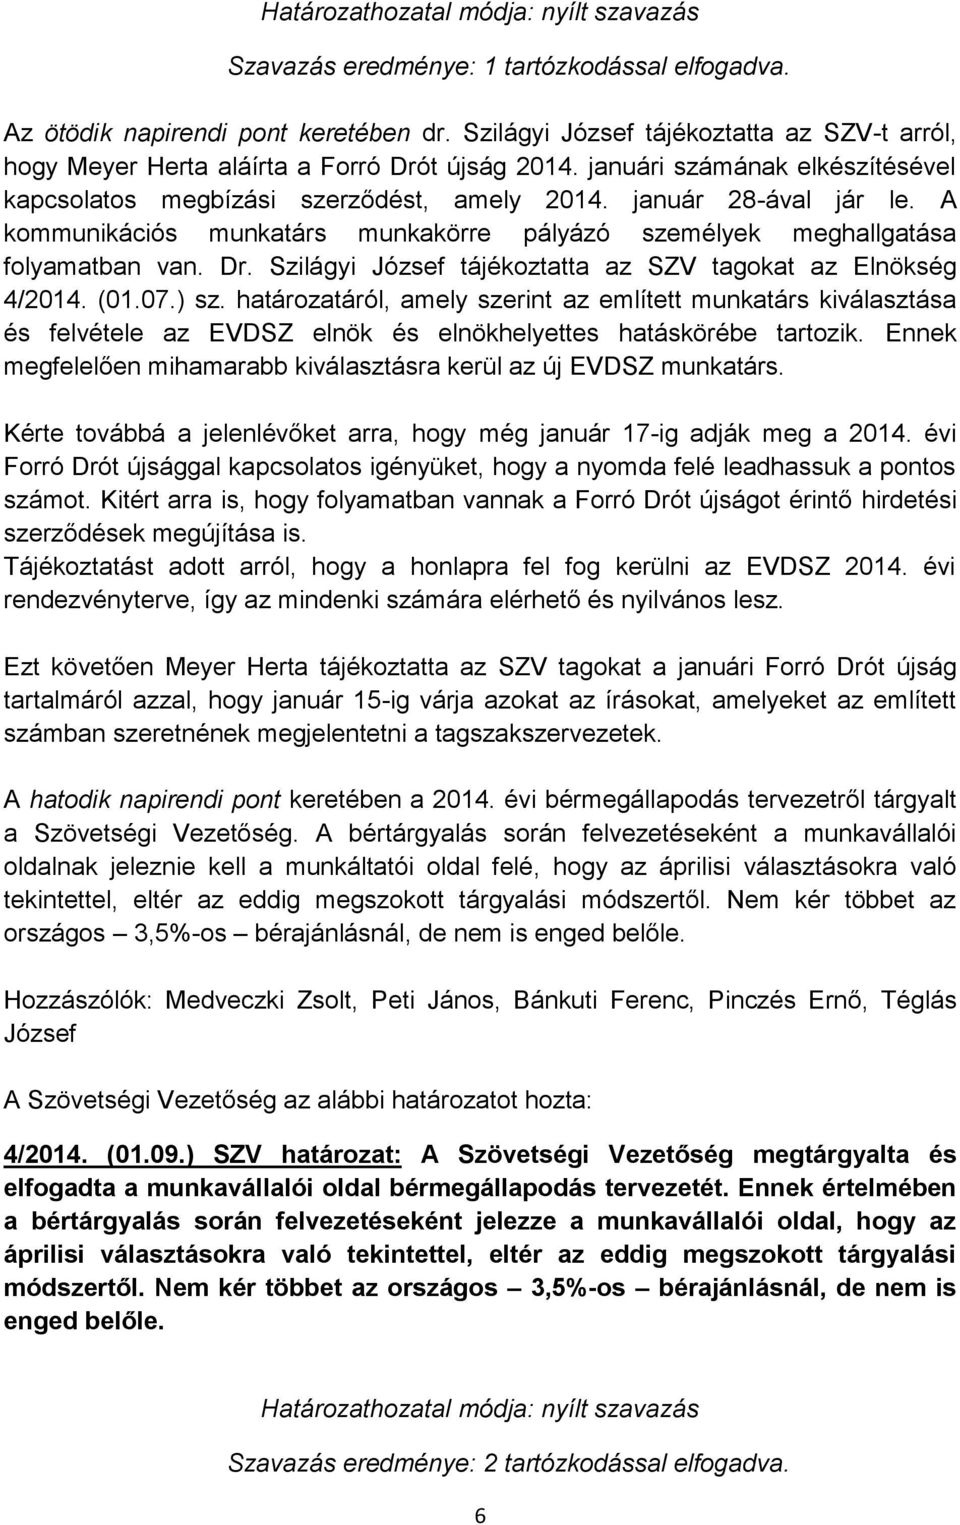 A kommunikációs munkatárs munkakörre pályázó személyek meghallgatása folyamatban van. Dr. Szilágyi József tájékoztatta az SZV tagokat az Elnökség 4/2014. (01.07.) sz.